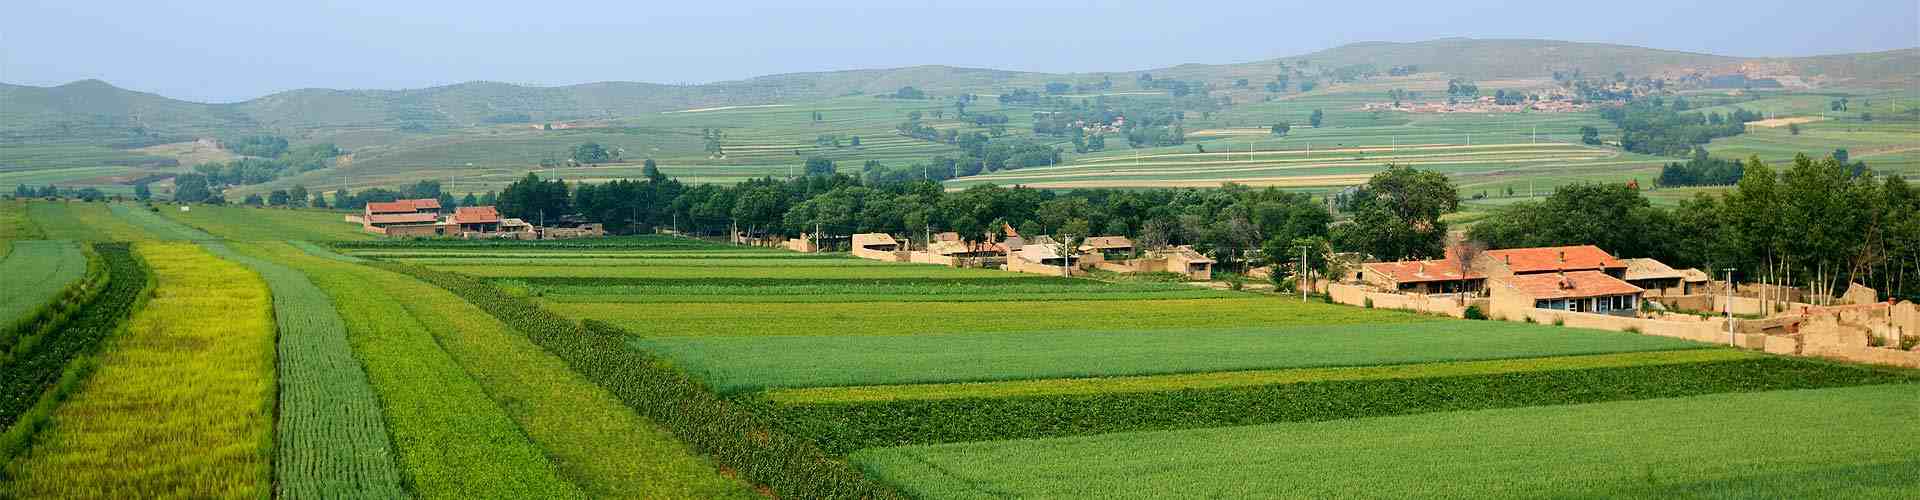 Casas rurales con granja de animales en el País Vasco
          
          

